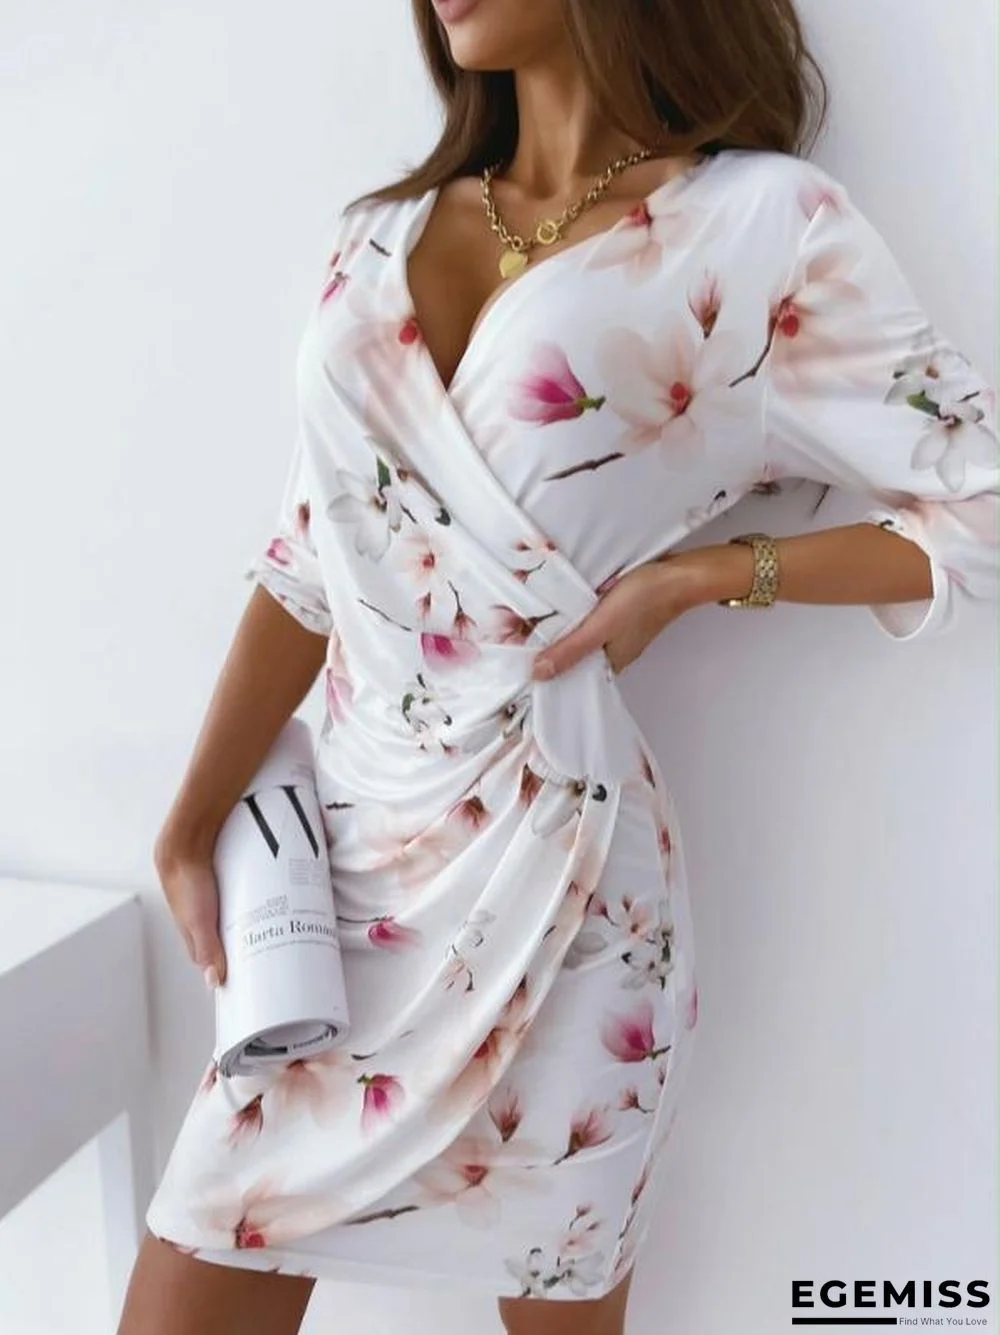 New Printed Slim V-neck Dress for Summer Wear White Dresses | EGEMISS